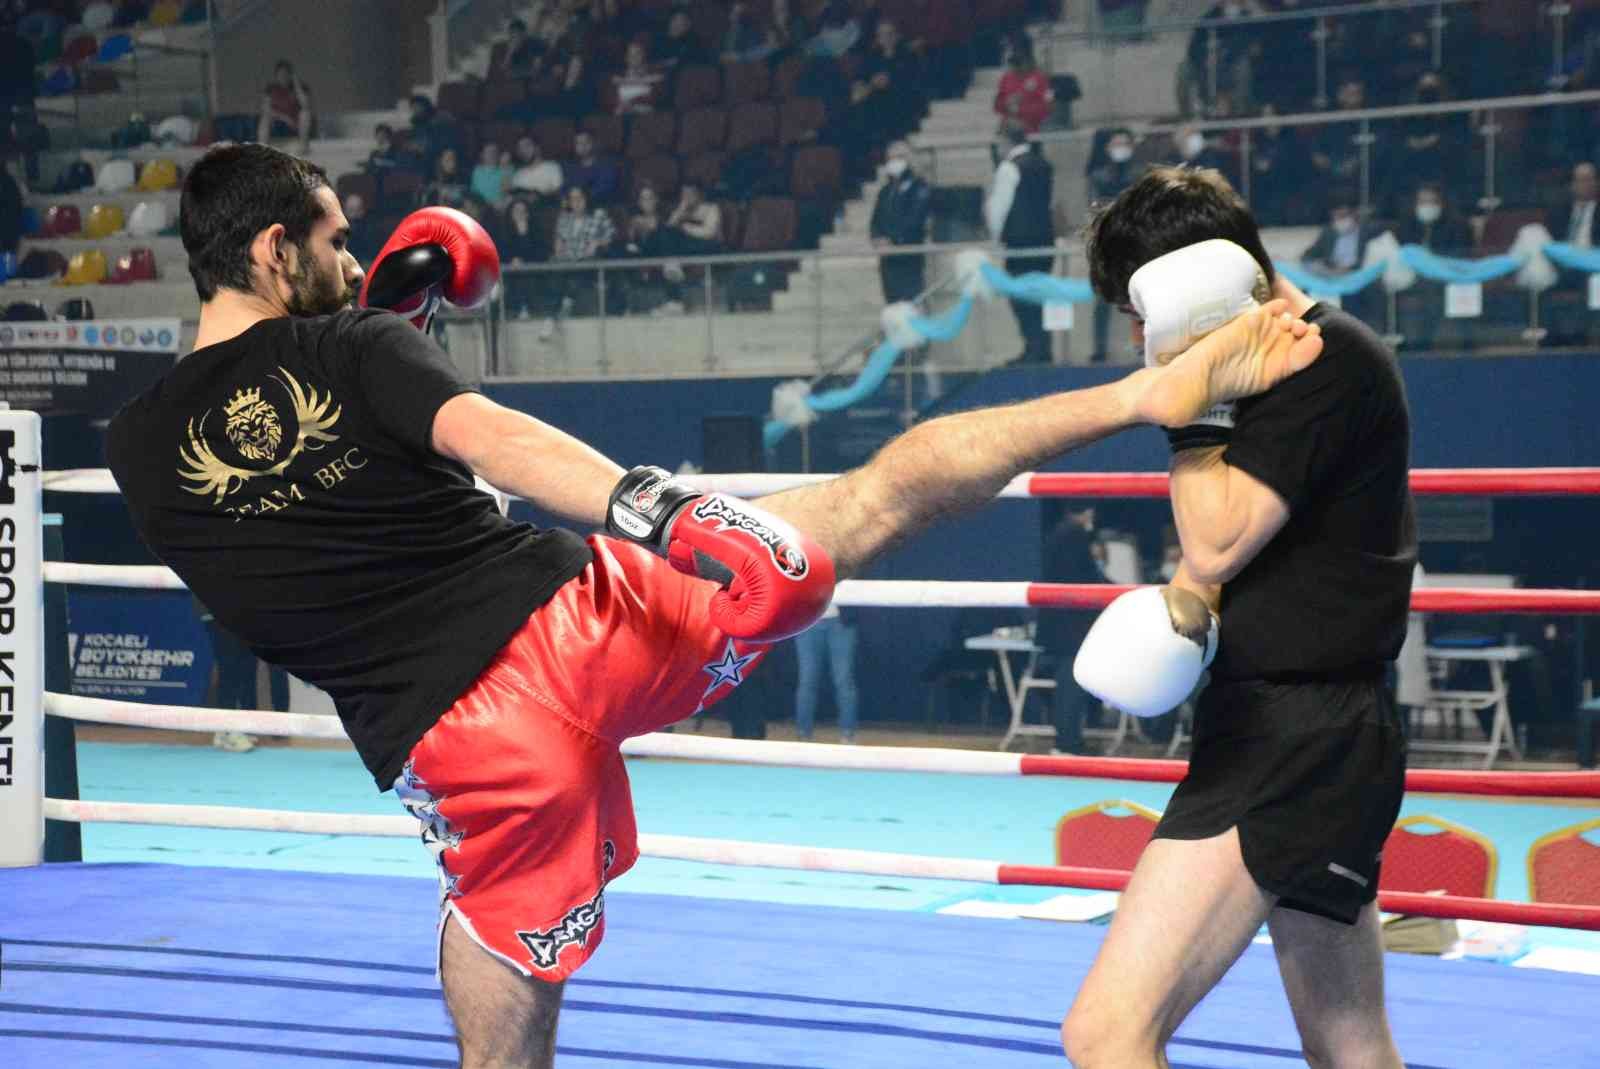 Büyükler Profesyonel Kick Boks Türkiye Şampiyonası Kocaeli’de başladı #kocaeli